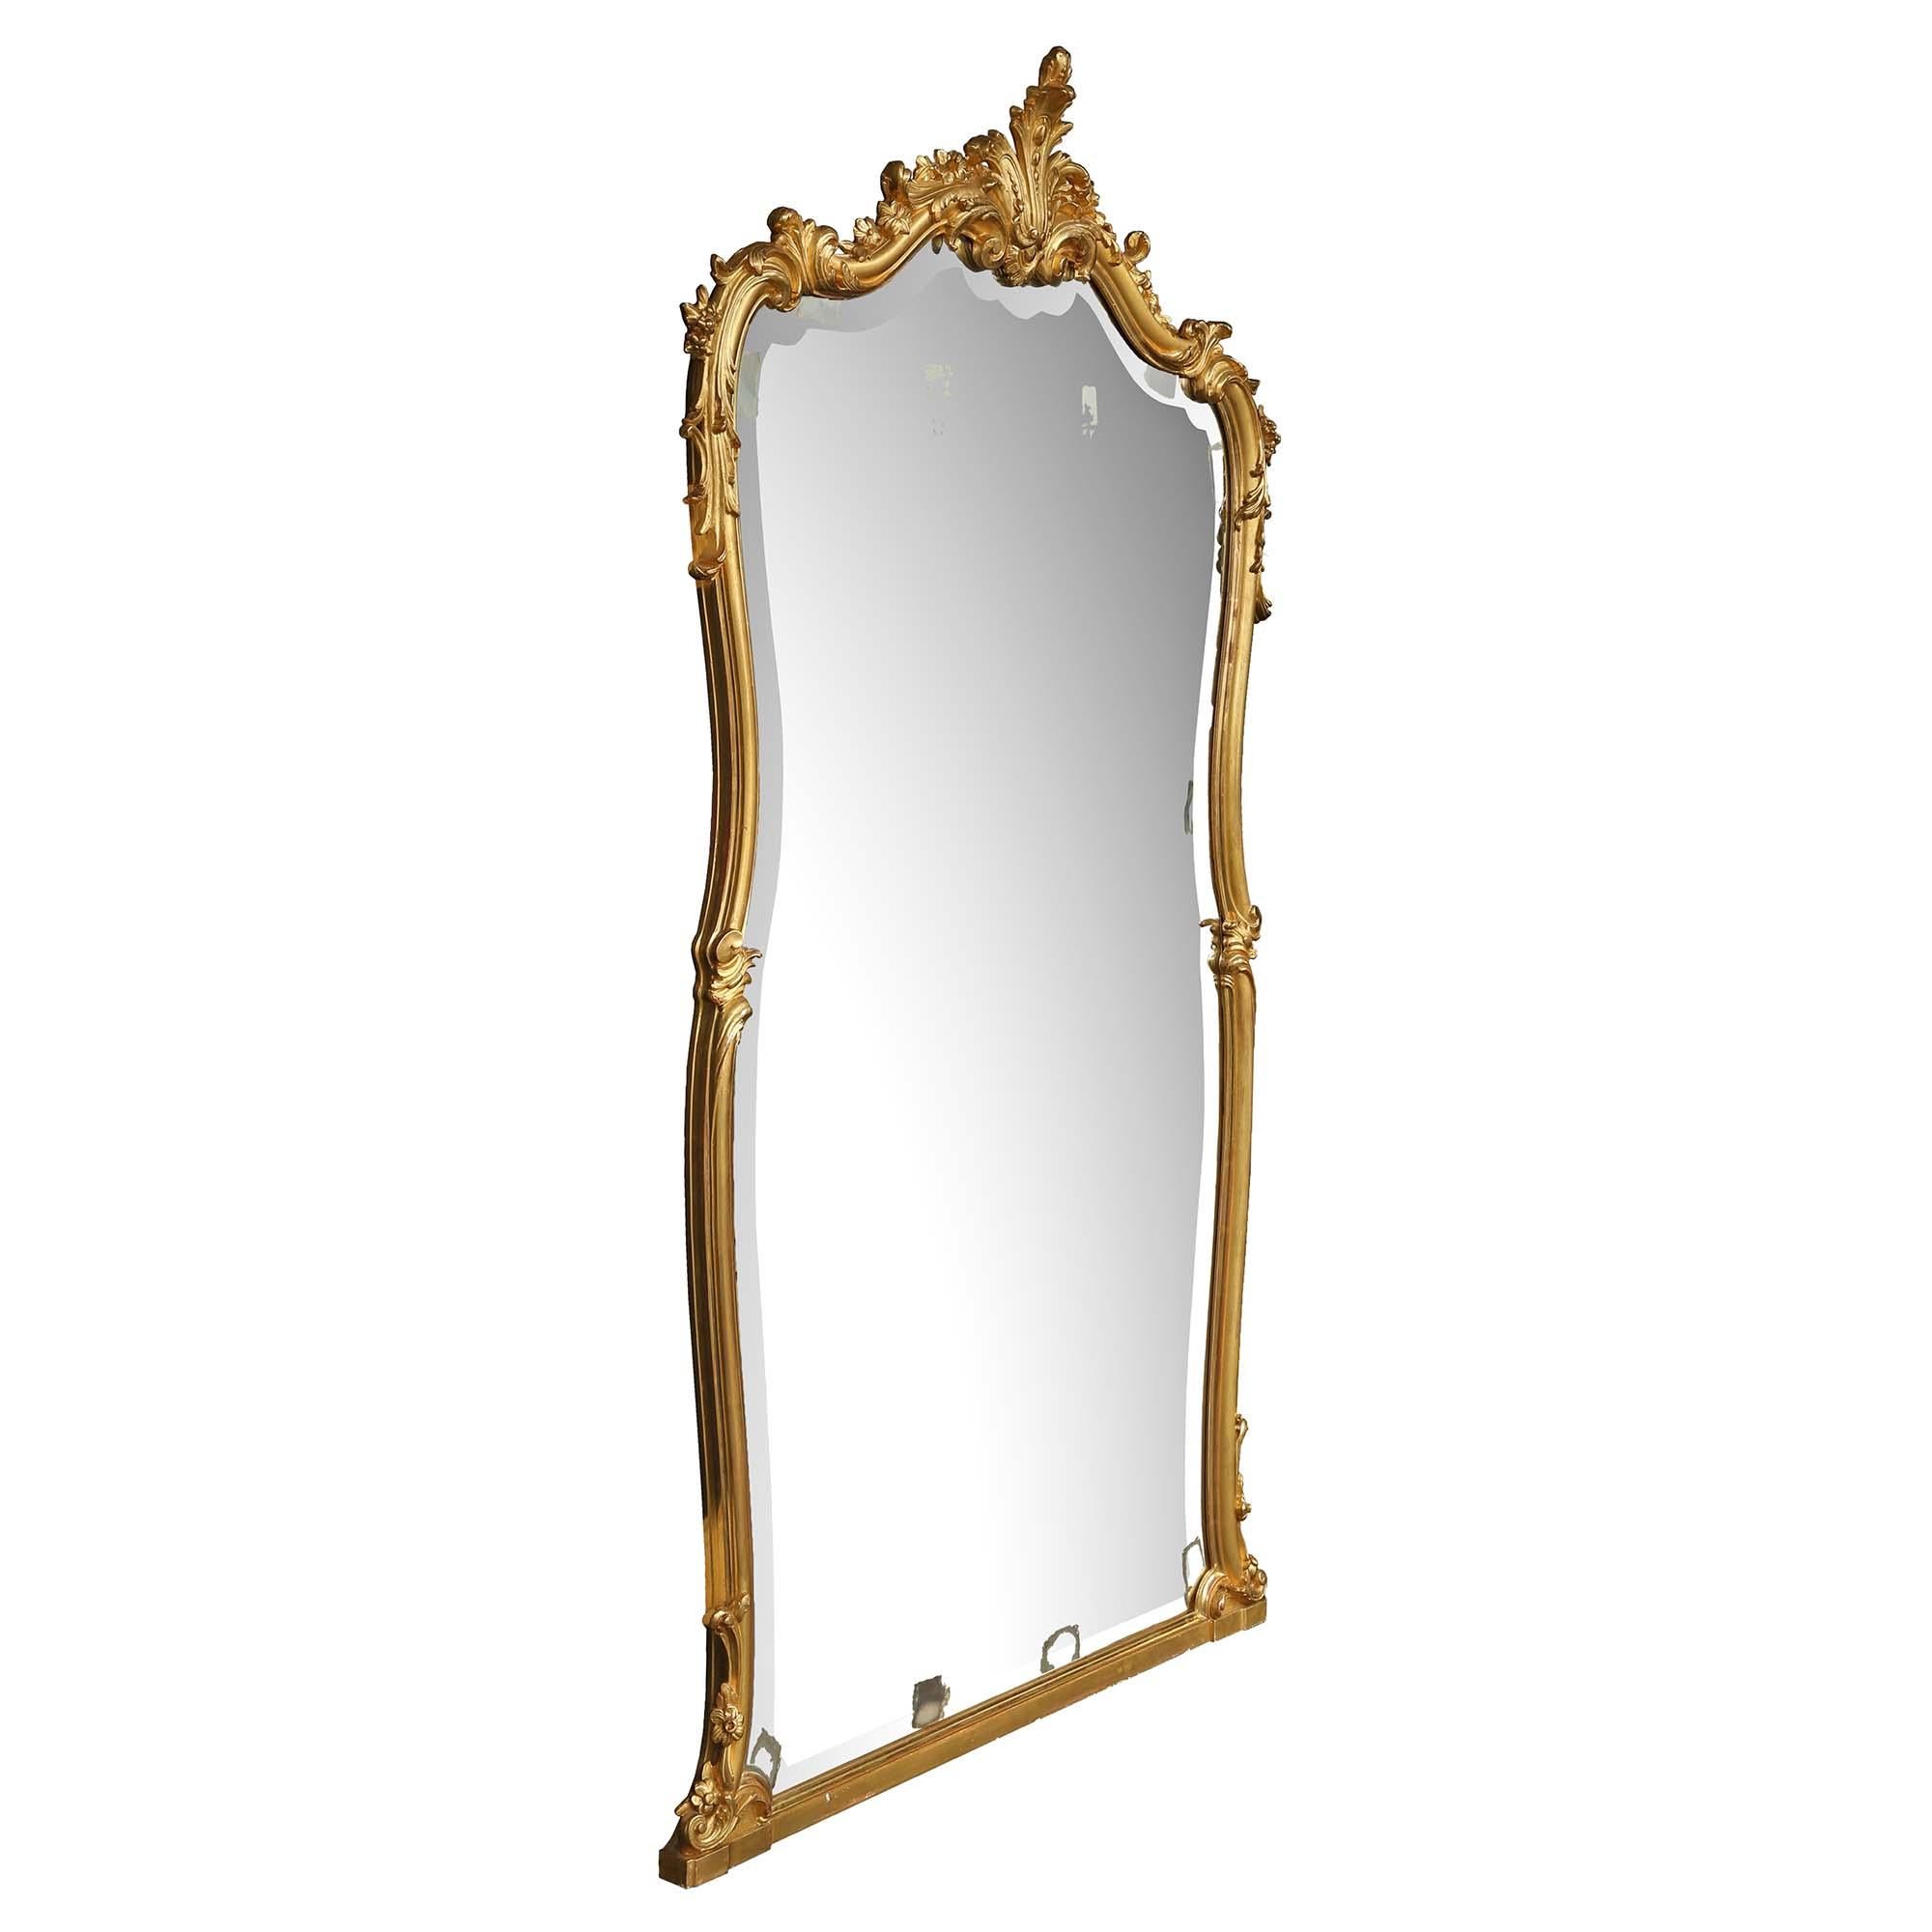 Un élégant miroir français du 19ème siècle en bois doré de style Louis XV. La plaque de miroir biseautée d'origine est encadrée d'une bordure en bois doré moulée à volutes extrêmement décorative. Sur le bord se trouvent des sculptures florales et un